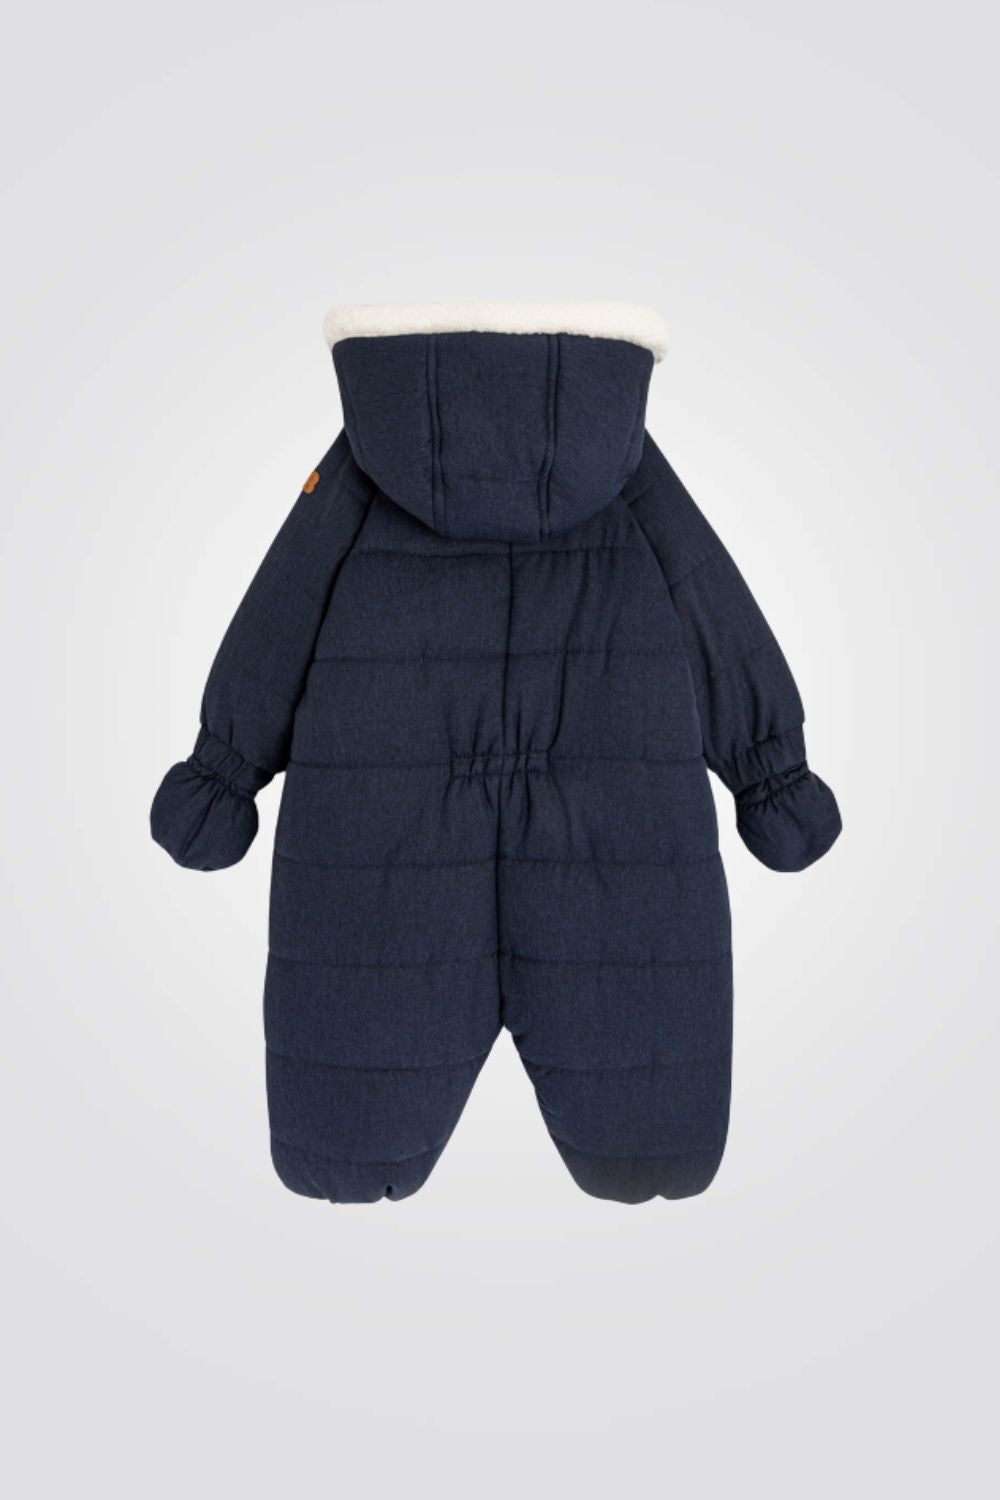 מעיל אוברול לתינוקות בצבע נייבי עם דובי מקדימה